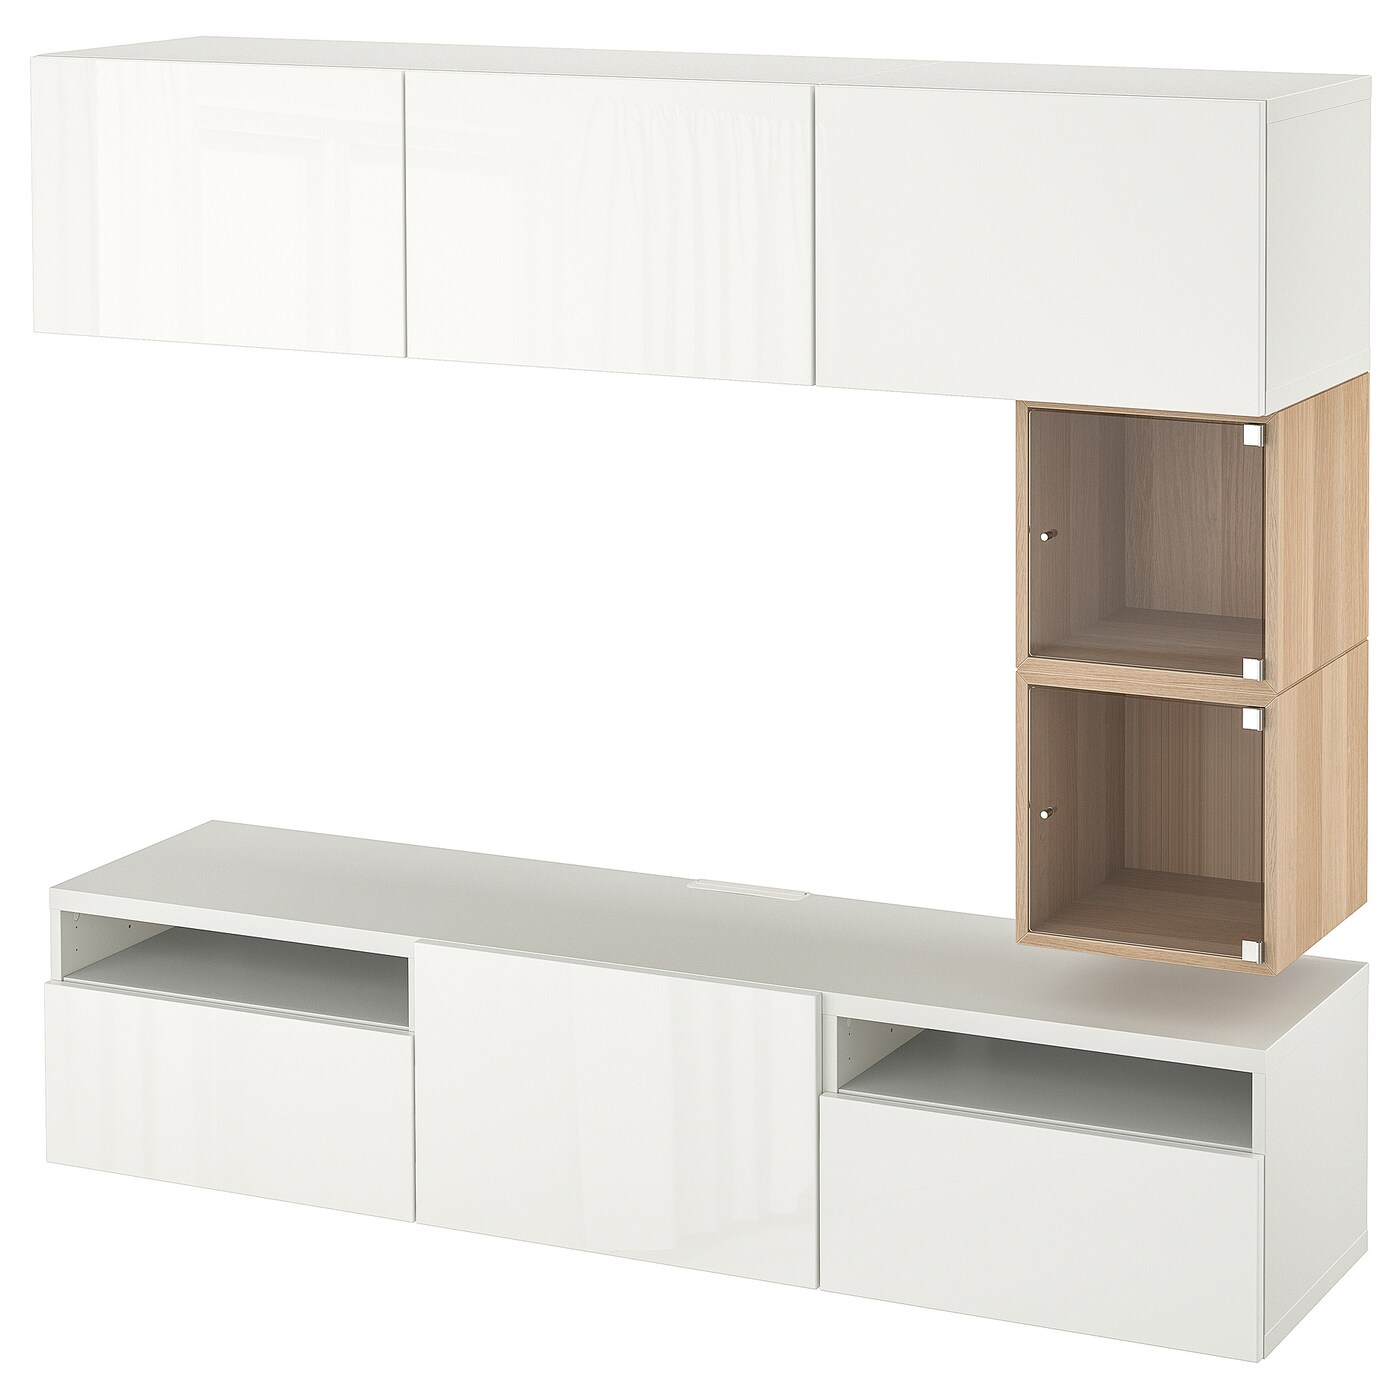 Комплект мебели д/гостиной  - IKEA BESTÅ/BESTA EKET, 166x42x180см, белый/светло-коричневый, БЕСТО ЭКЕТ ИКЕА